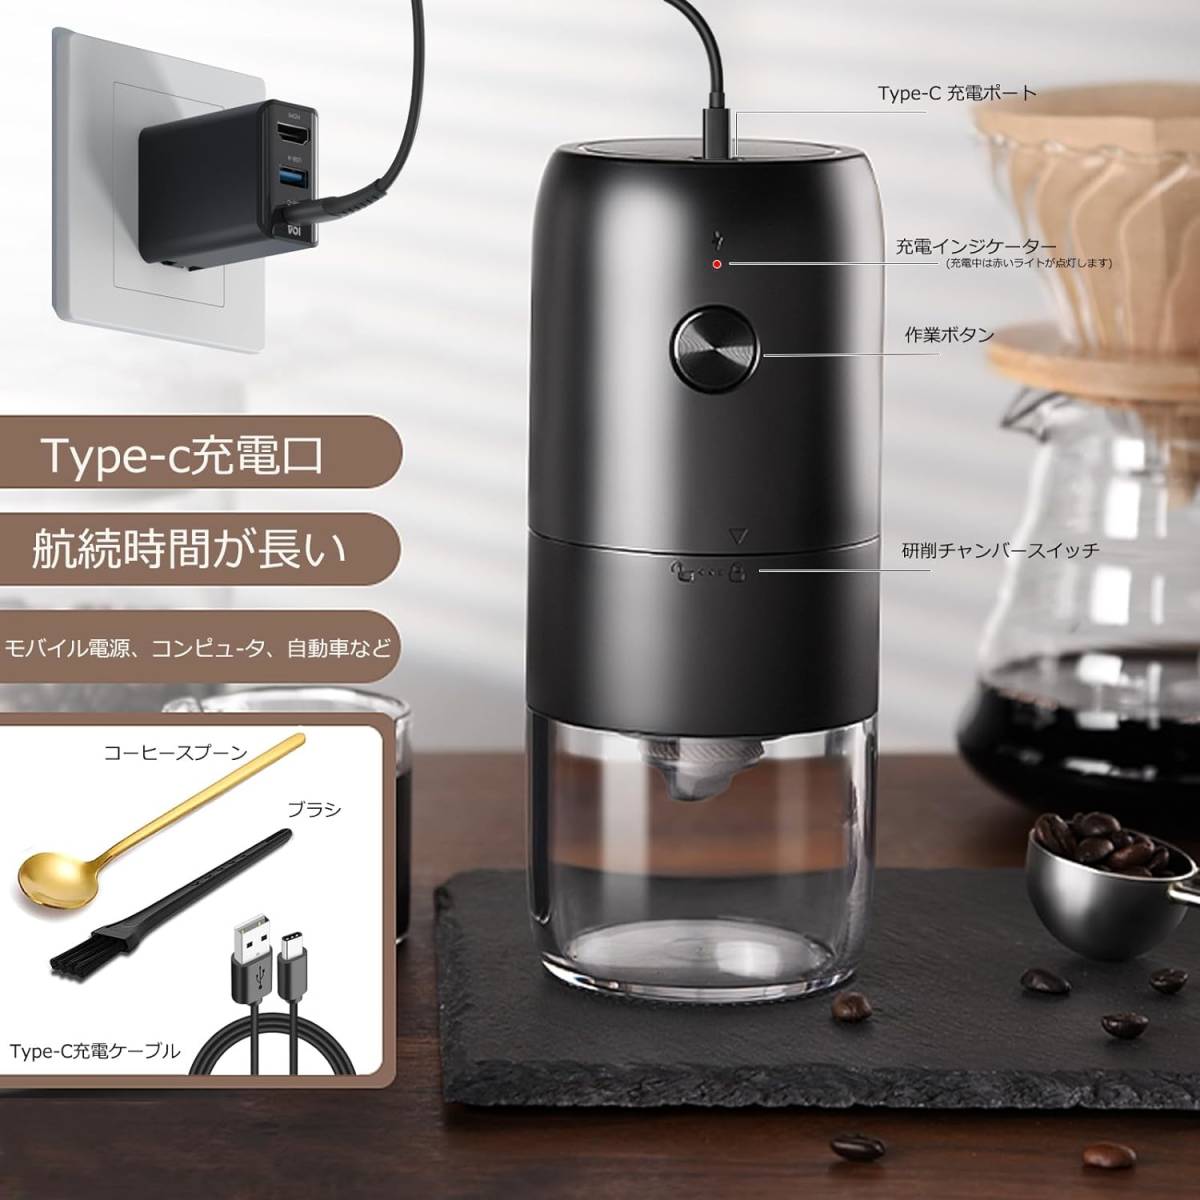 電動コーヒーグラインダー、充電式コーヒー豆グラインダー、ポータブル小型コーヒーグラインダー(ブラック)